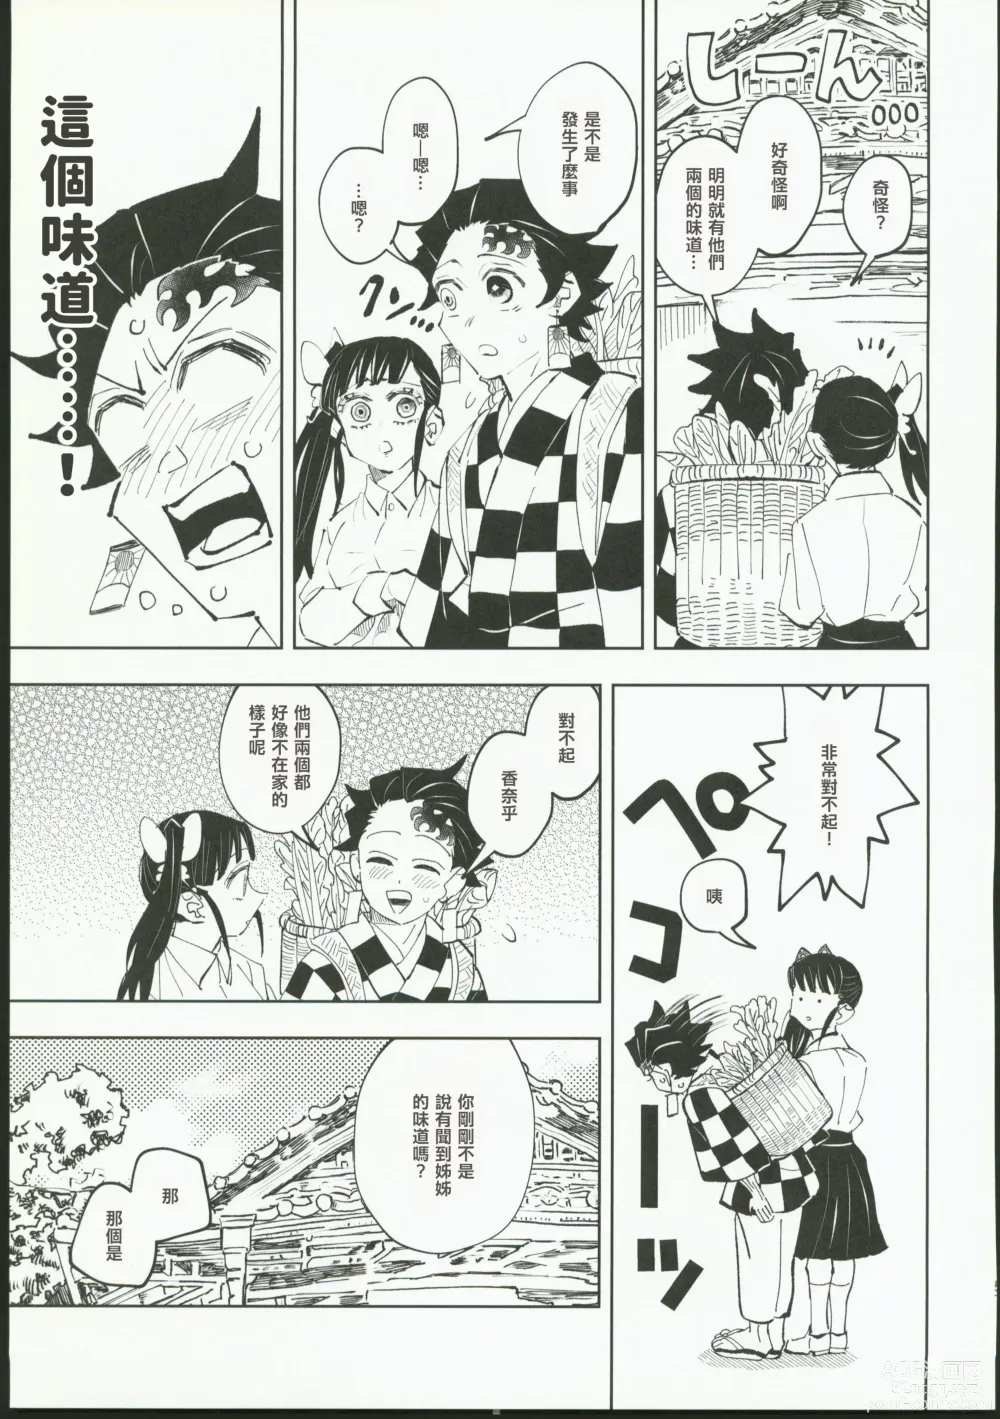 Page 56 of doujinshi Hazama